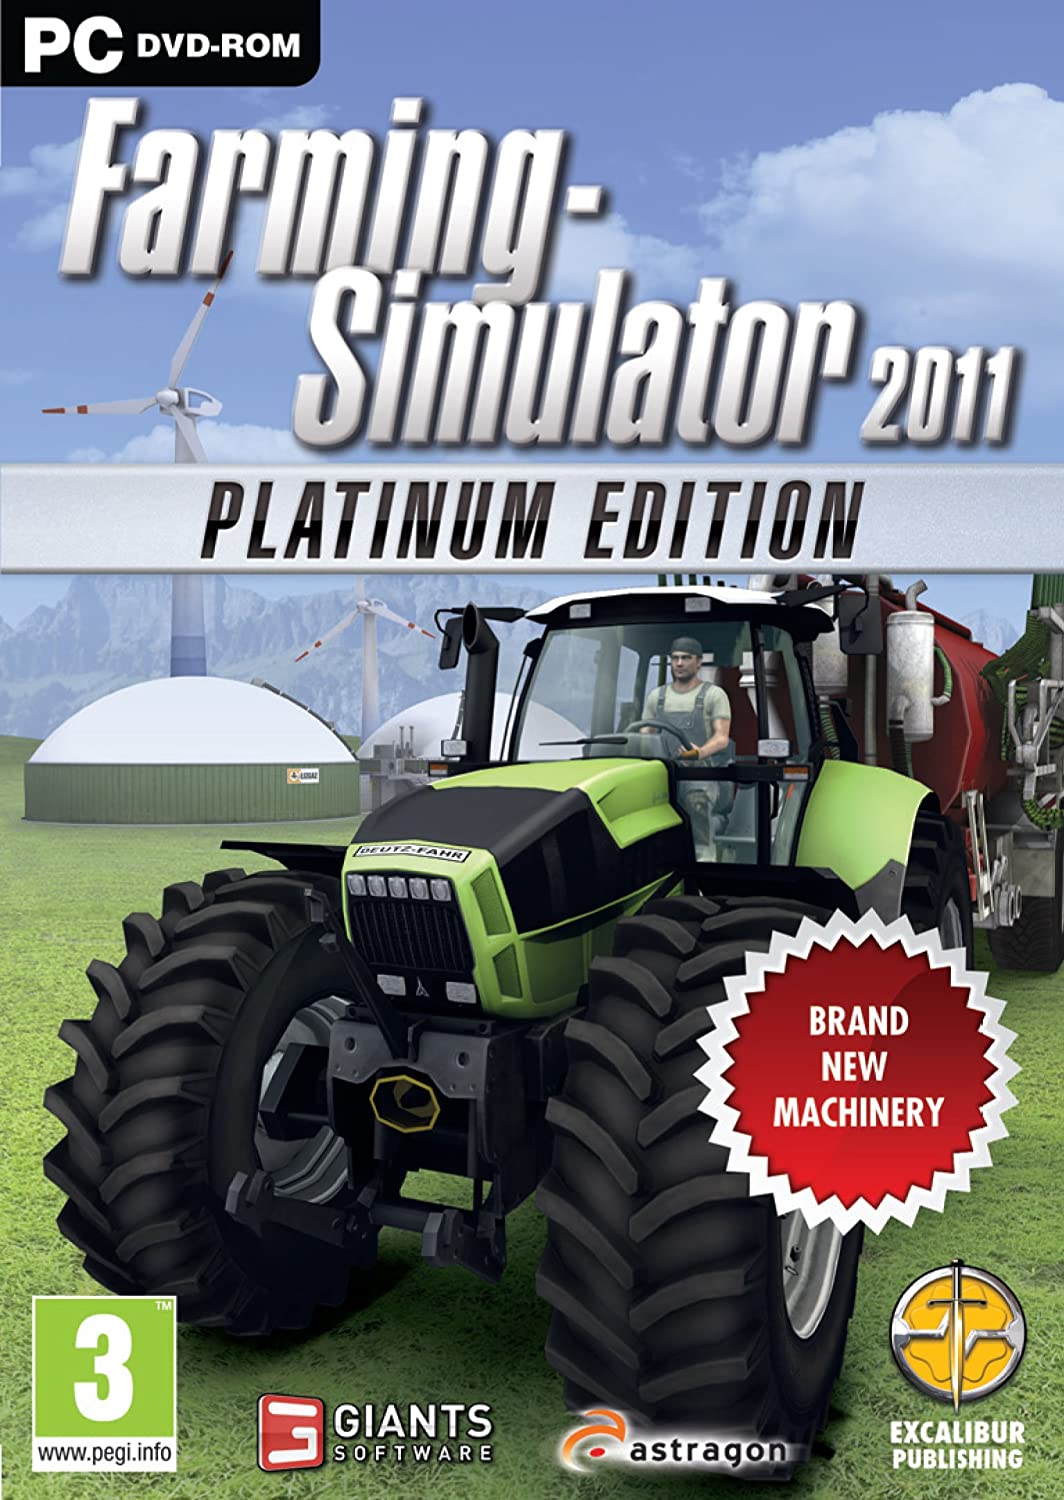 Landwirtschafts-Simulator 2011 – Die Platinum Edition (PC-DVD)